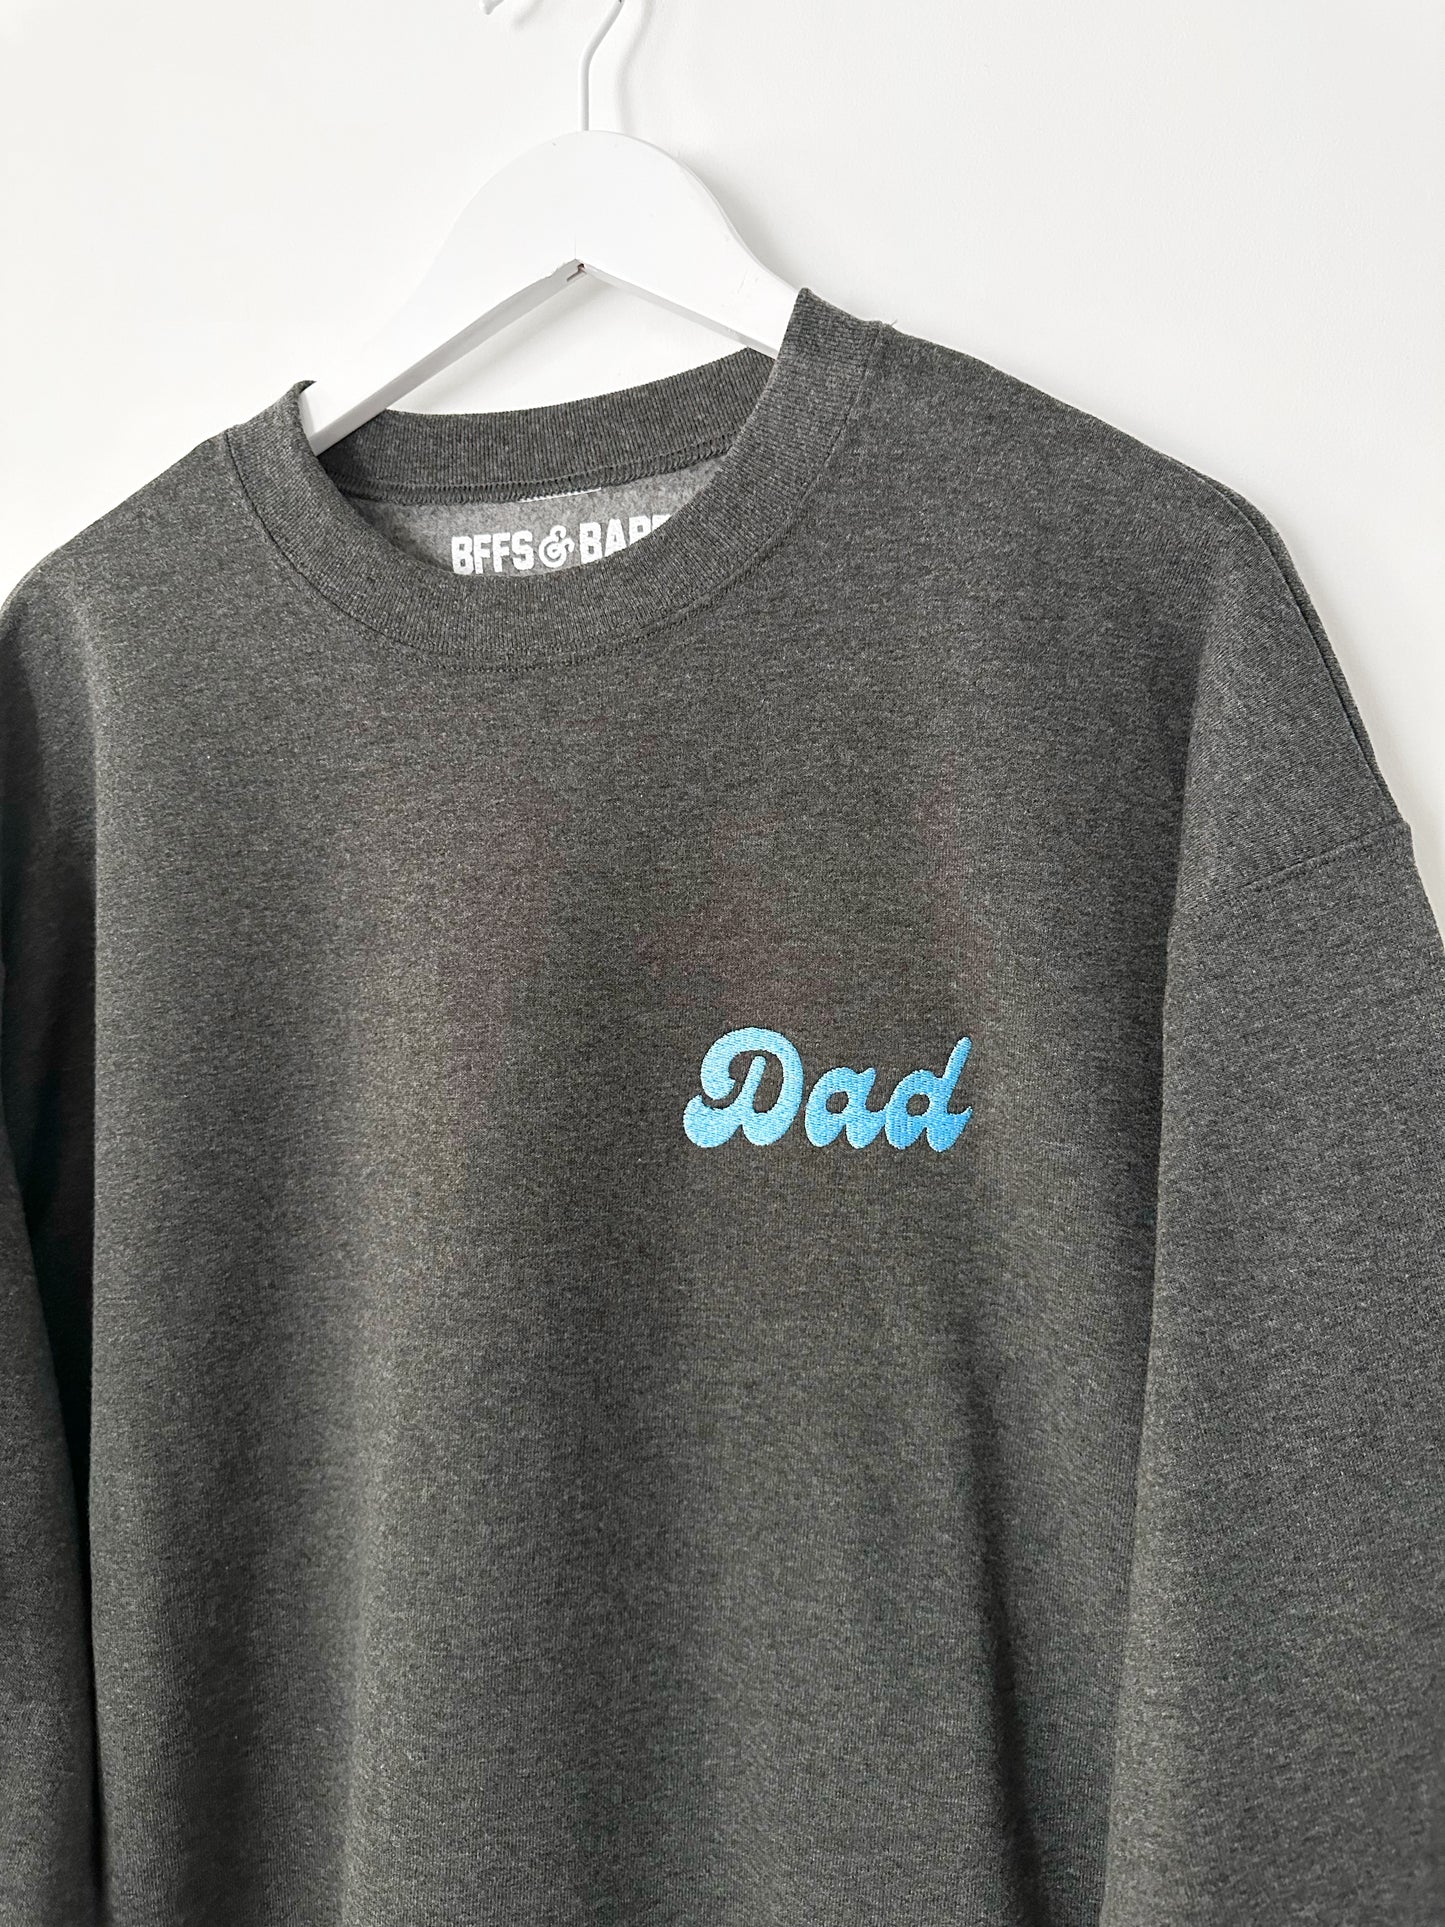 DAD SCRIPT STITCH ♡ embroidered sweatshirt